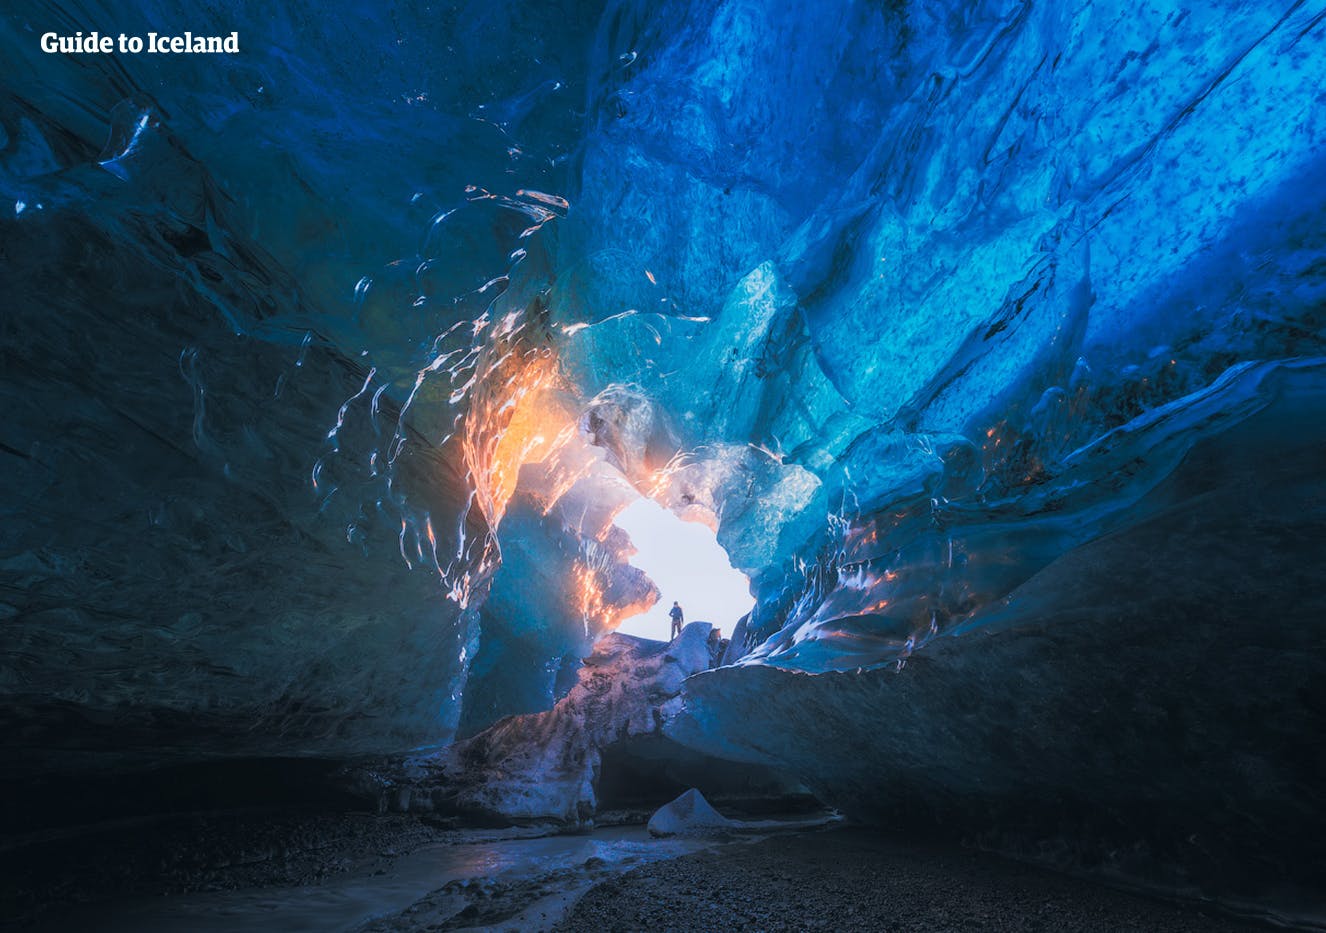 Sous le glacier Vatnajökull, il y a un réseau de grottes de glace que les visiteurs fortunés en Islande en hiver auront l'occasion d'explorer.